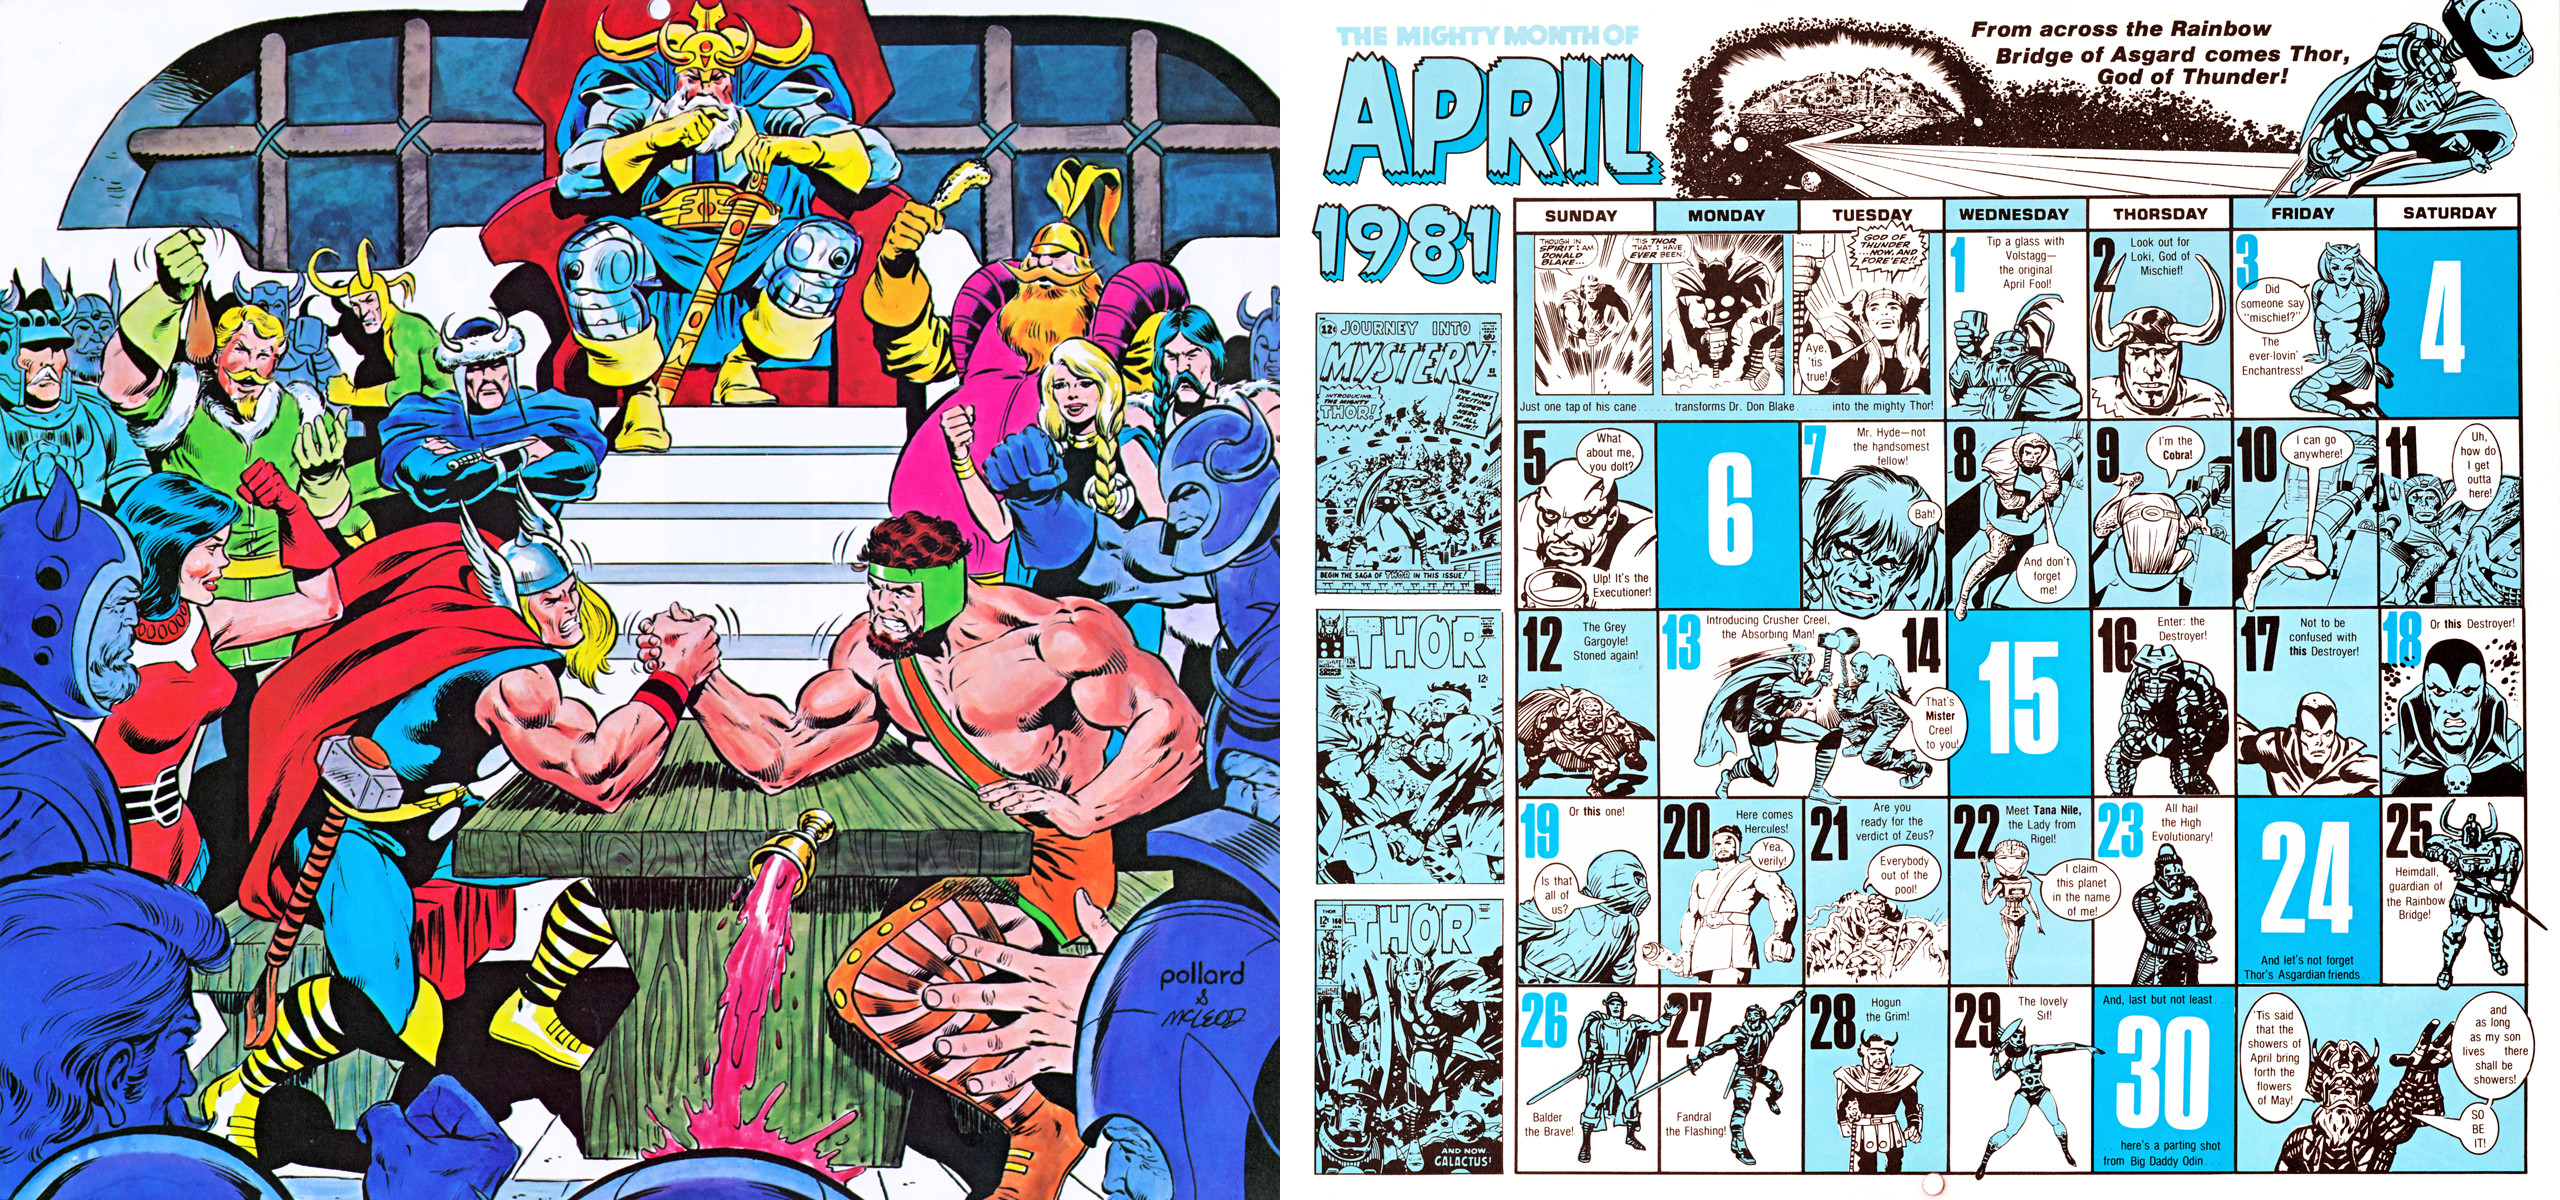 2560x1200 1981/2015 Marvel Comics Calendar - April